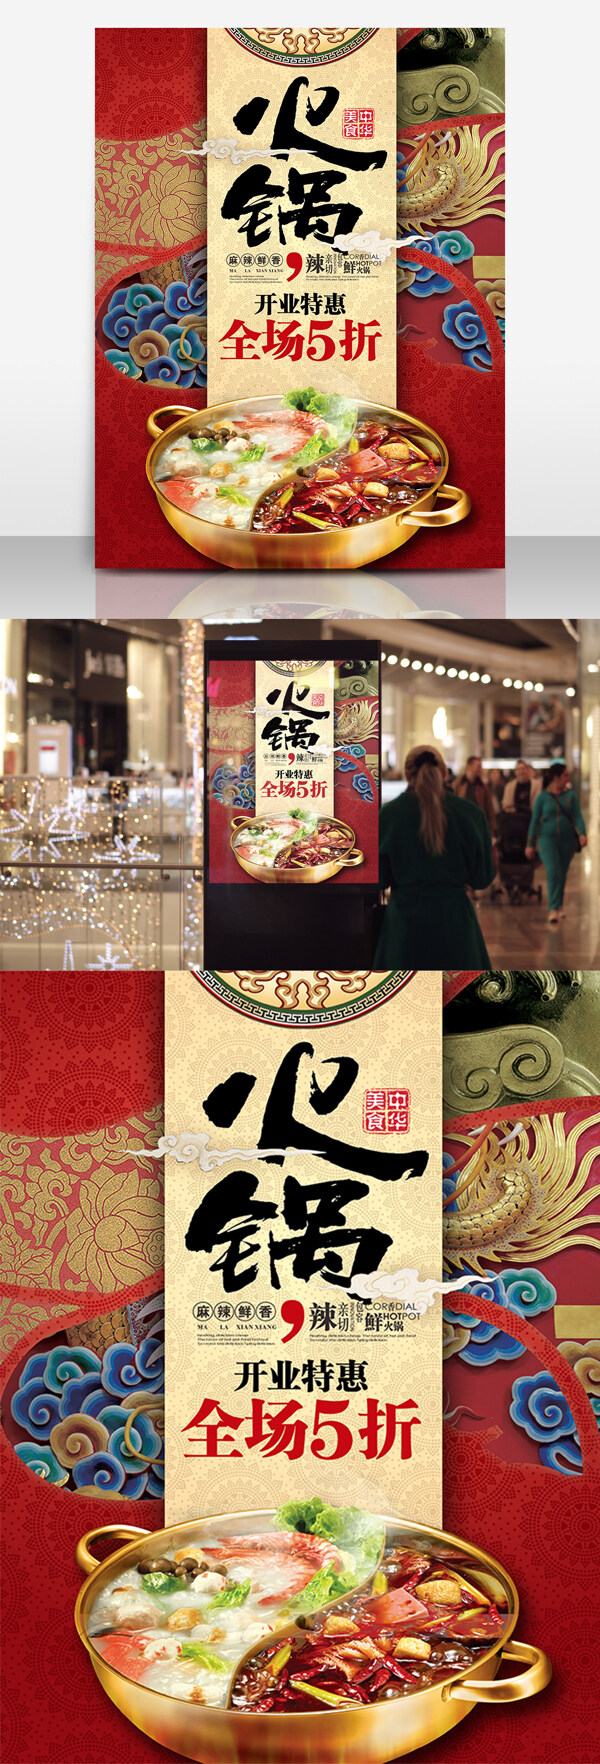 中国风火锅开业宣传美食海报